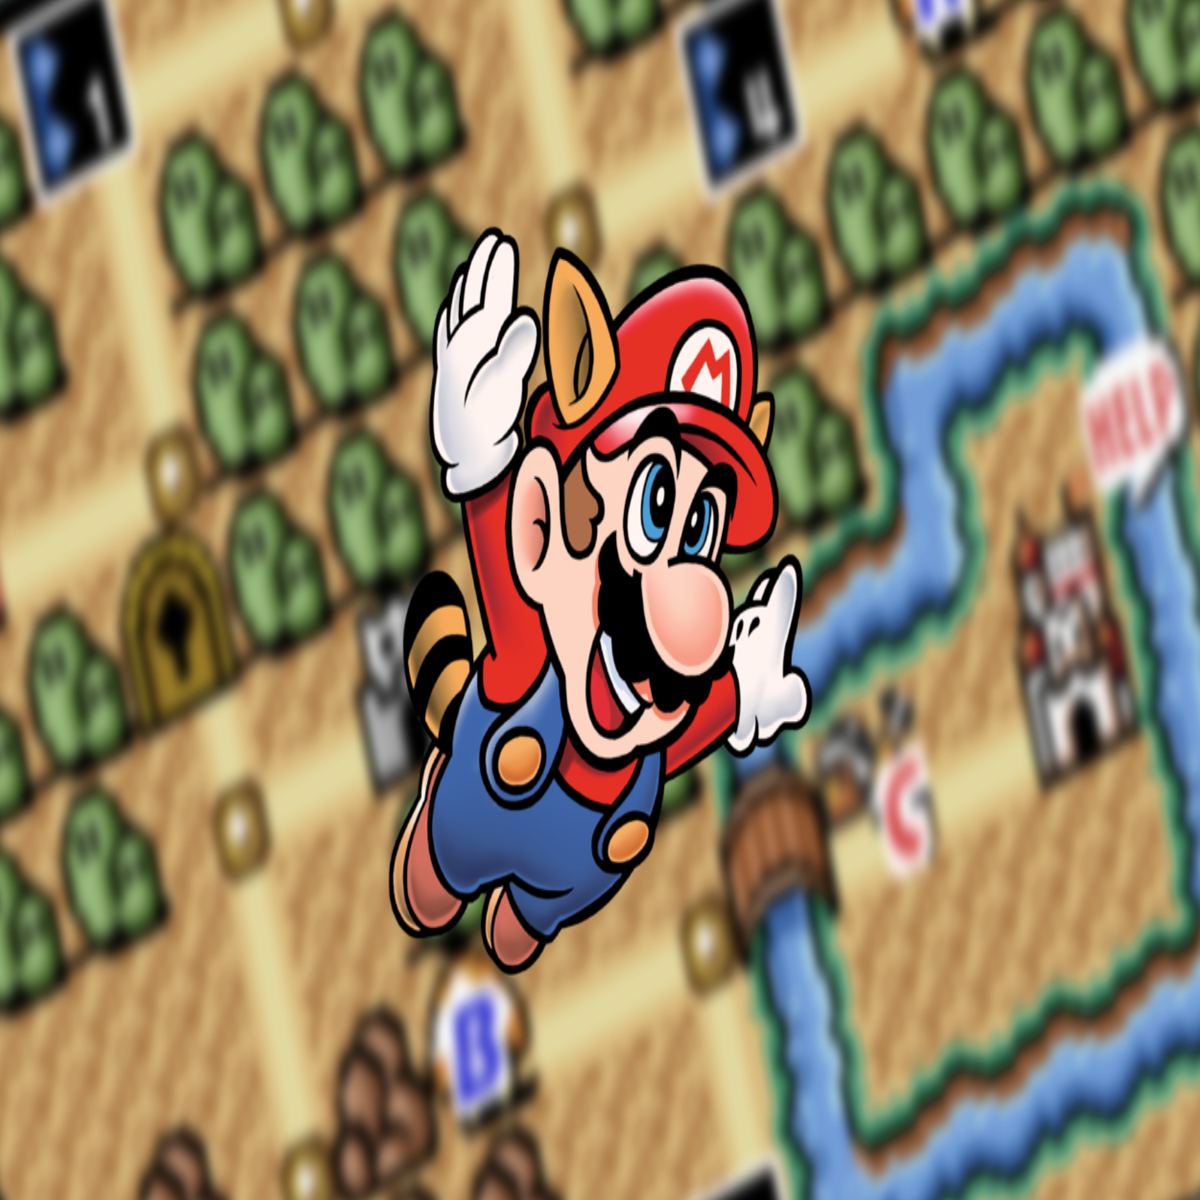 Super Mario Bros 3 - Full Game Walkthrough (SNES) 